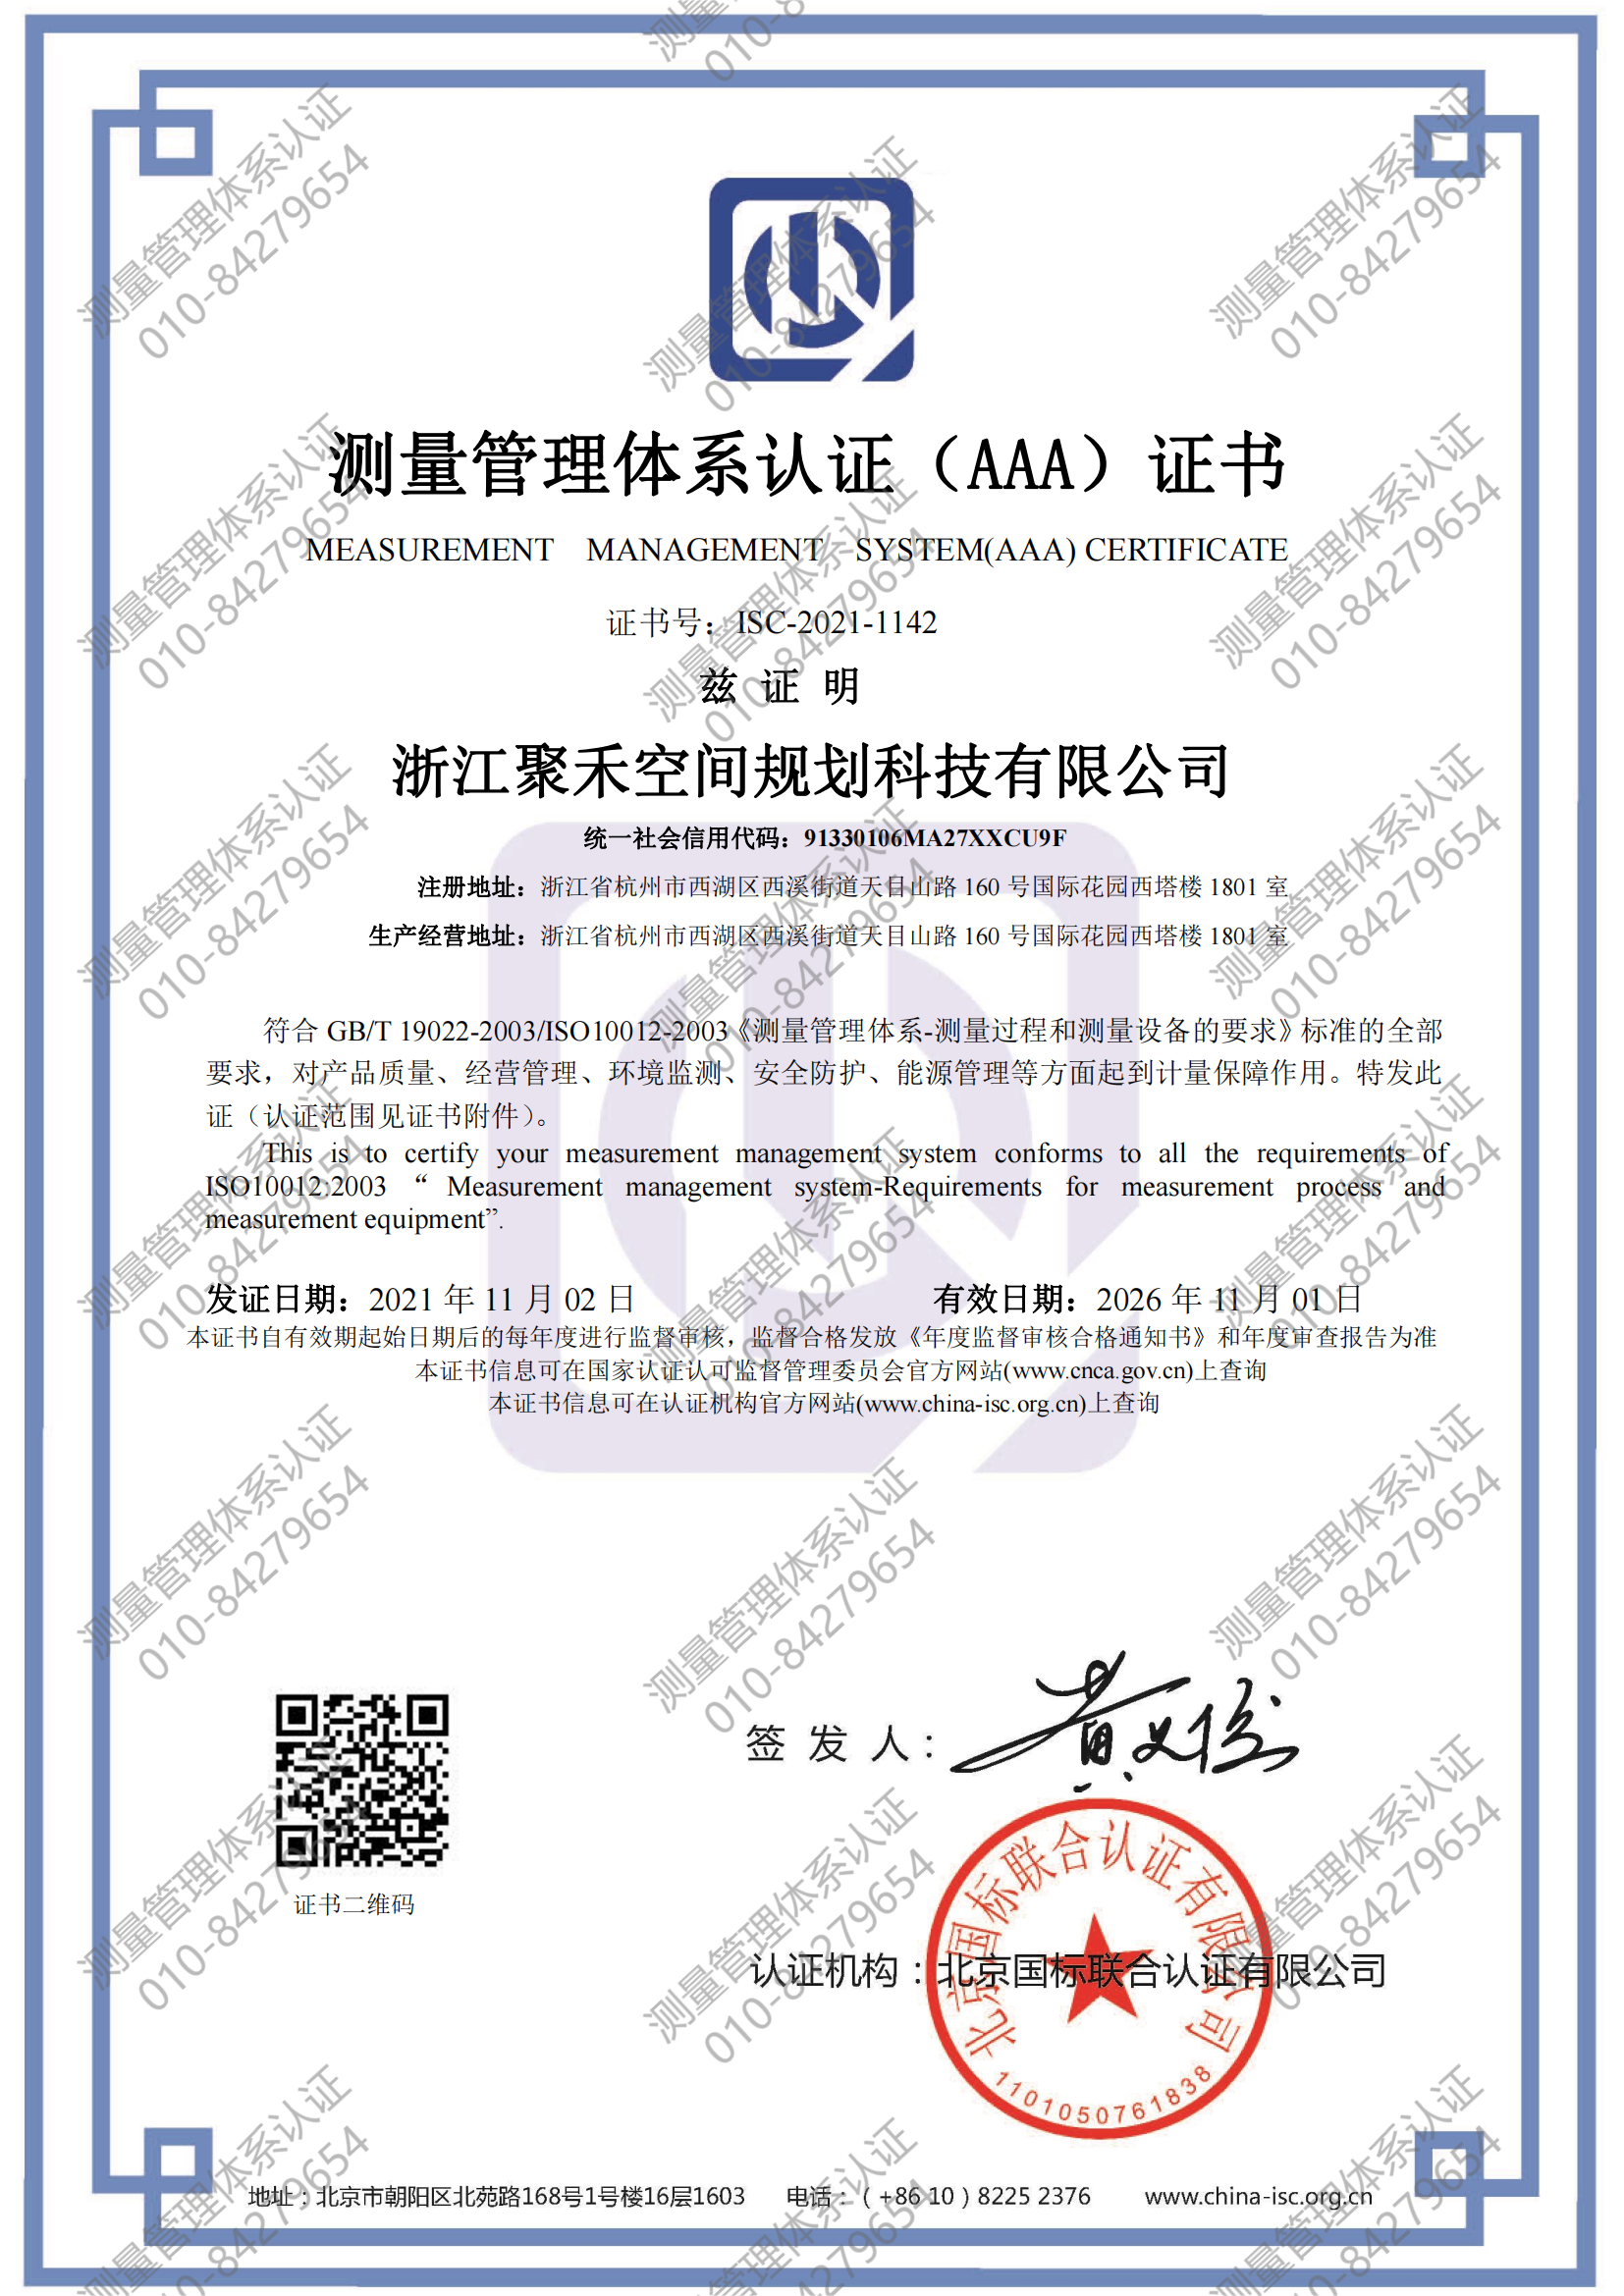 浙江聚禾空间规划科技有限公司喜获“测量管理体系认证（AAA）证书”